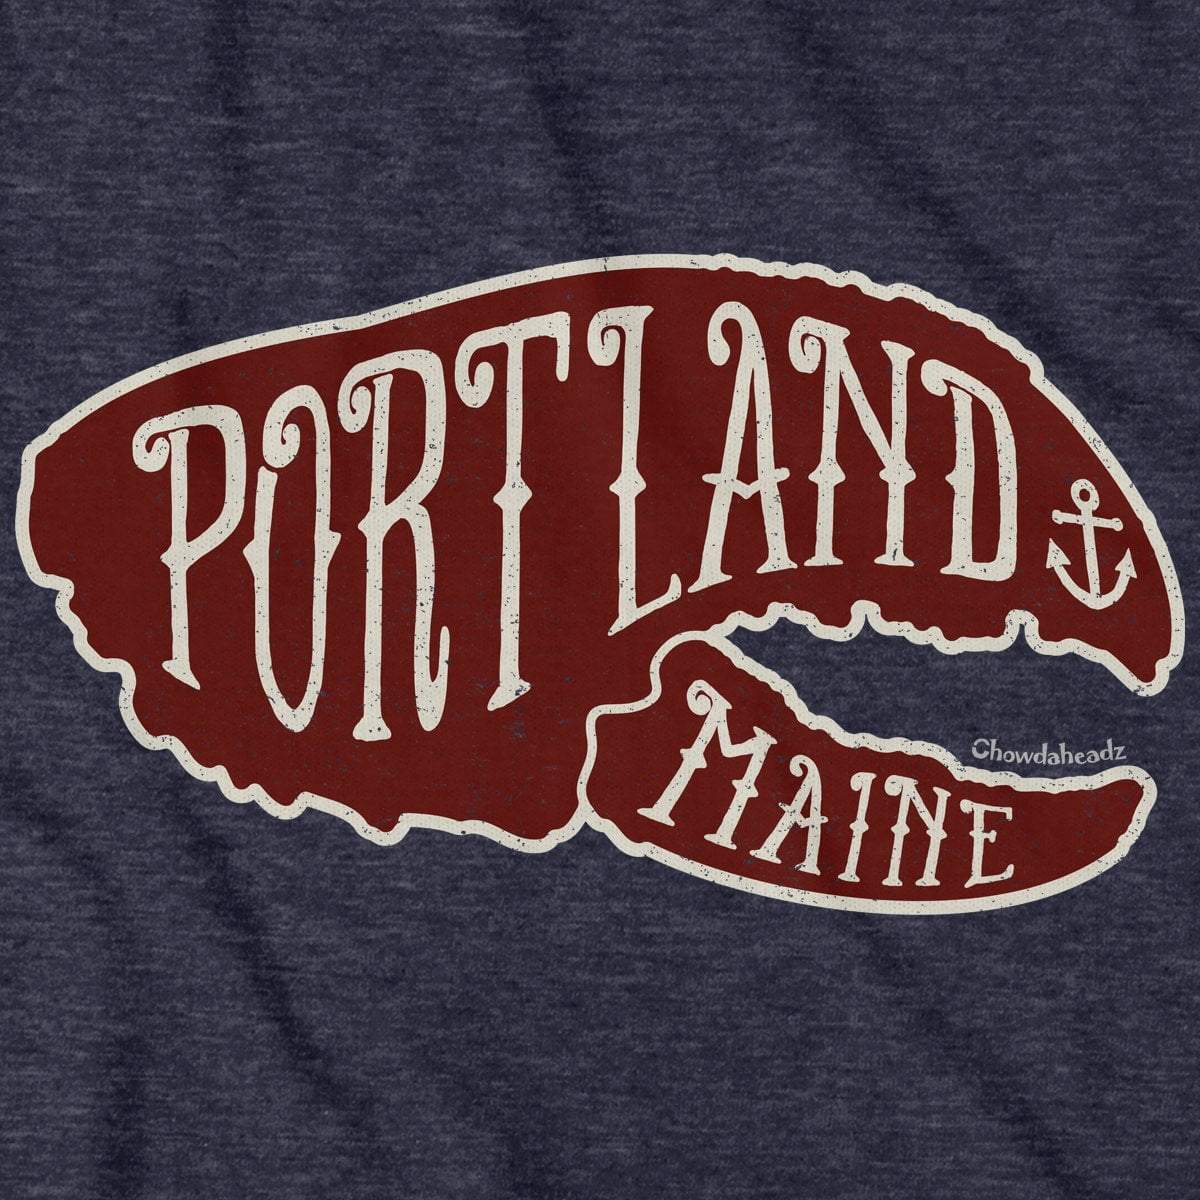 Portland Lobstah Claw T-shirt - Chowdaheadz